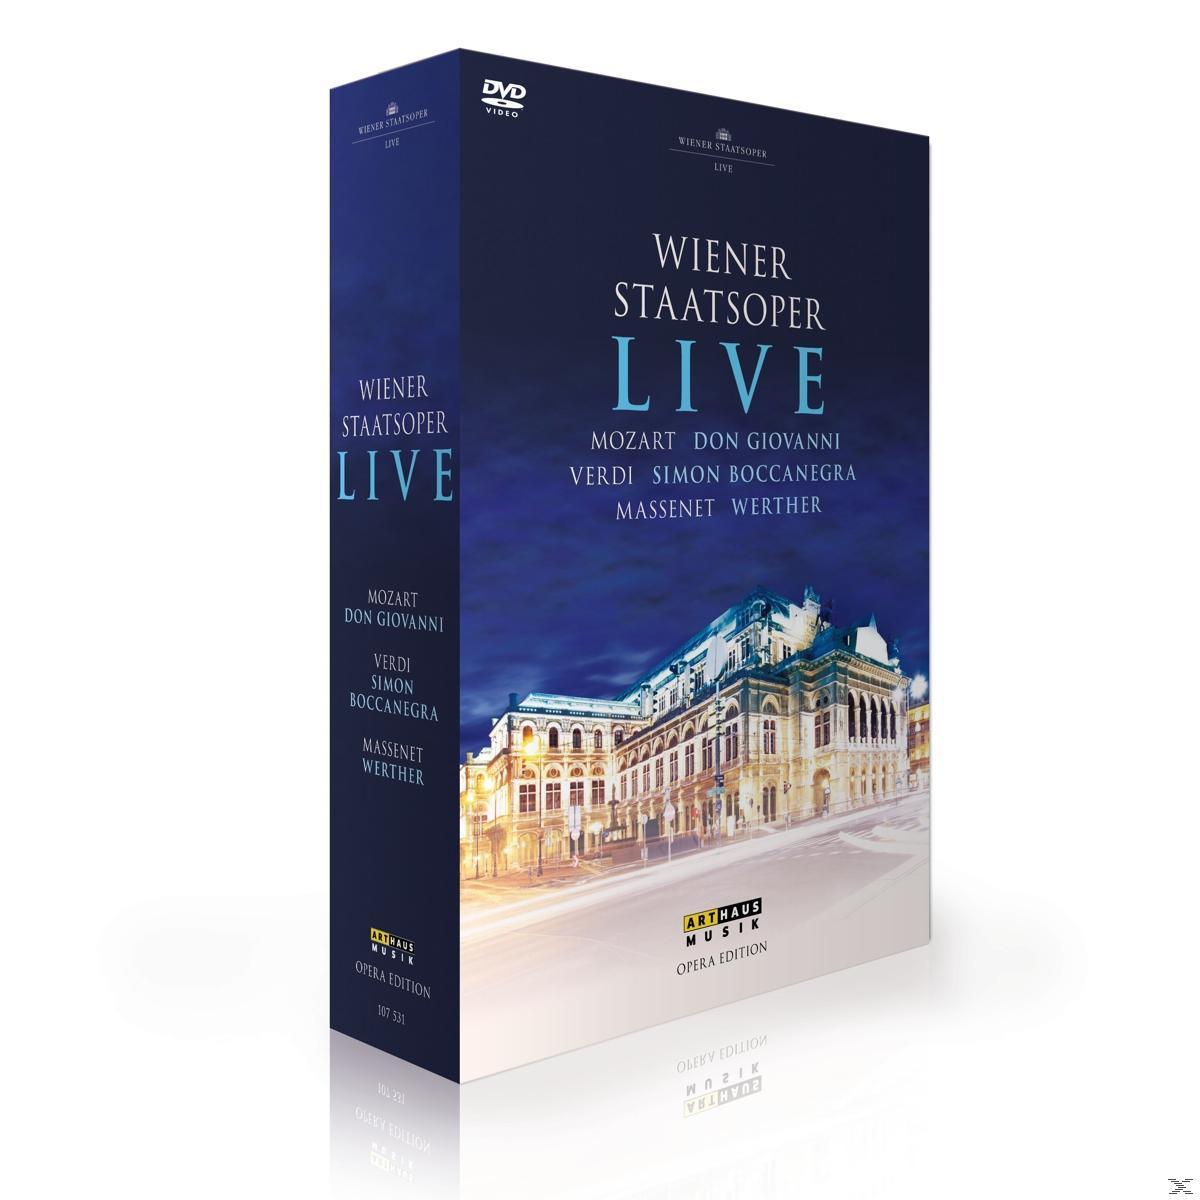 VARIOUS, Wiener Live (DVD) - Wiener - Staatsoper Staatsoper